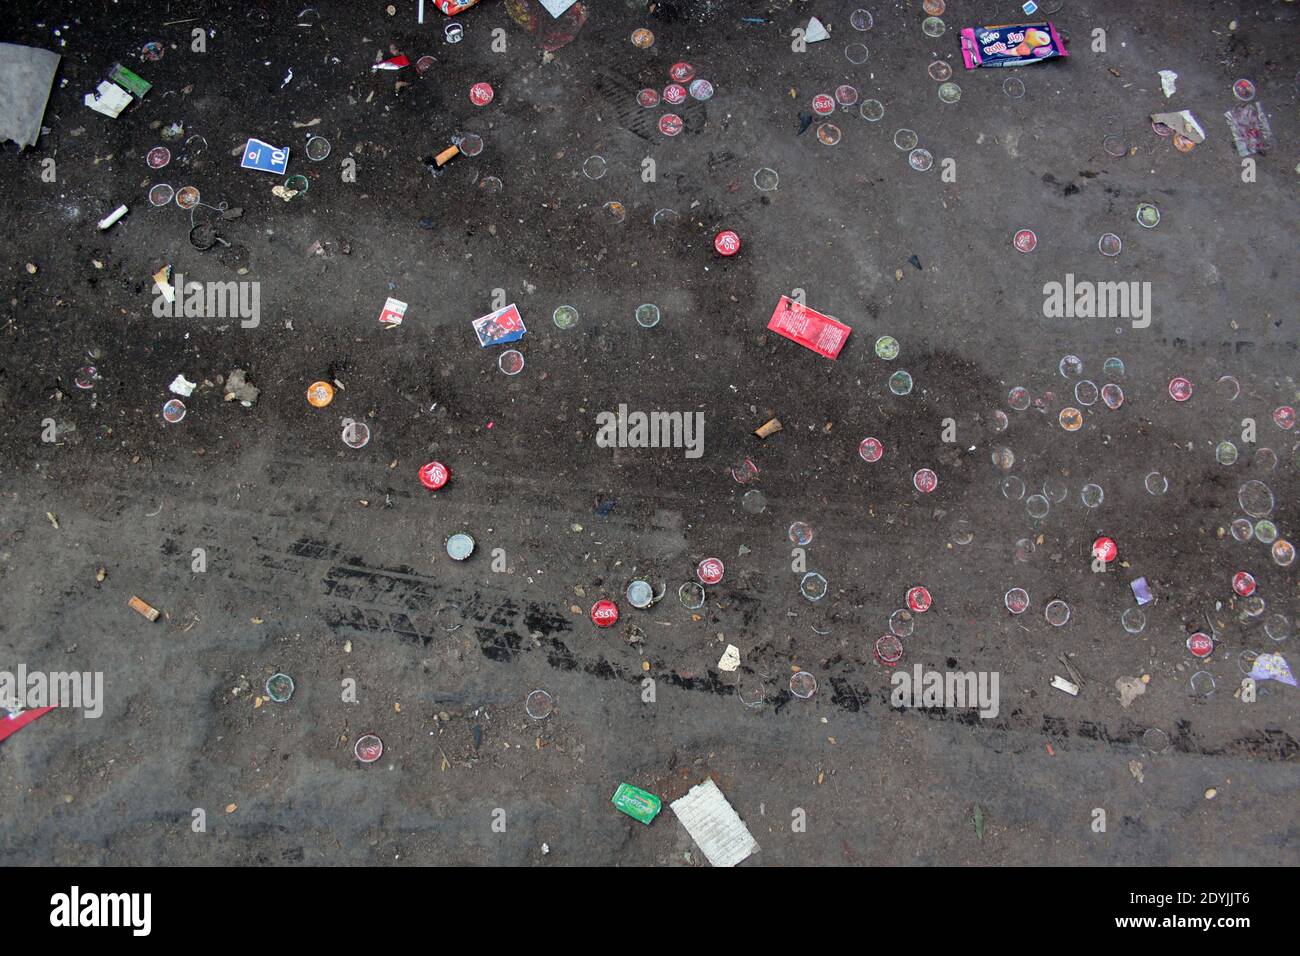 Des capsules et emballages jonchent le sol d'une rue du centre ville du Caire Foto Stock